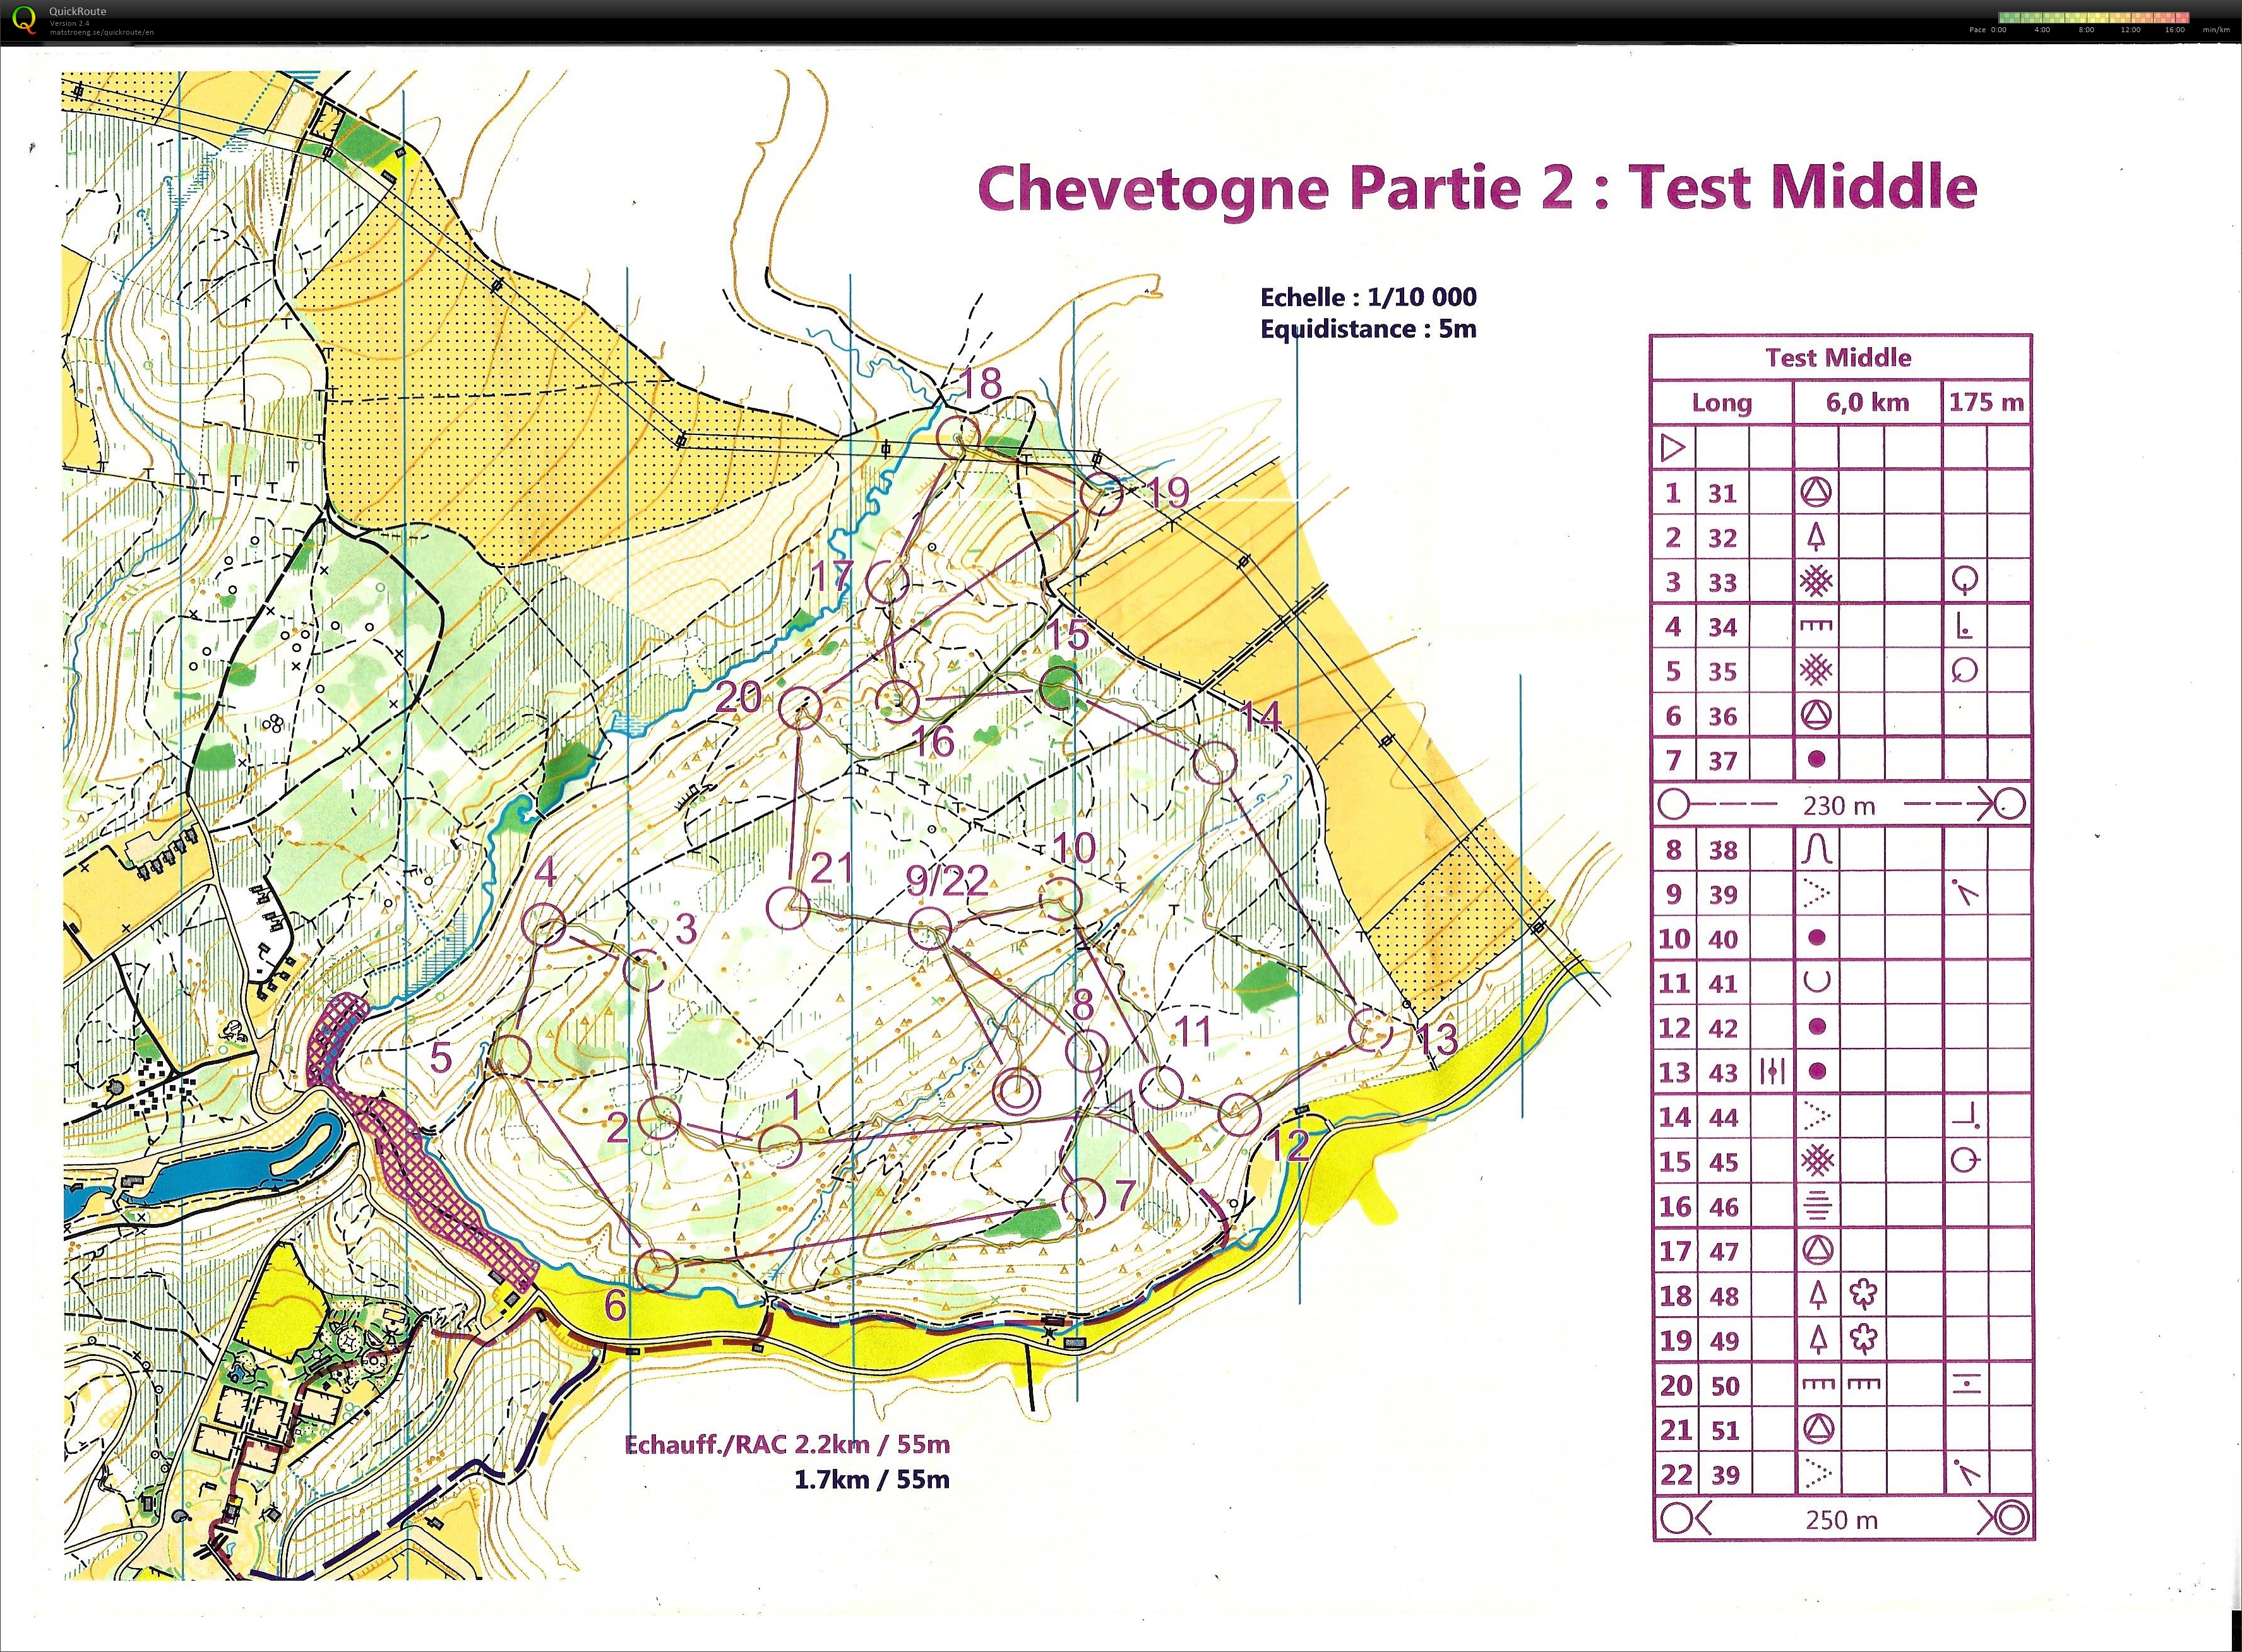 Entrainement Middle Distance Chevetogne (07-02-2021)